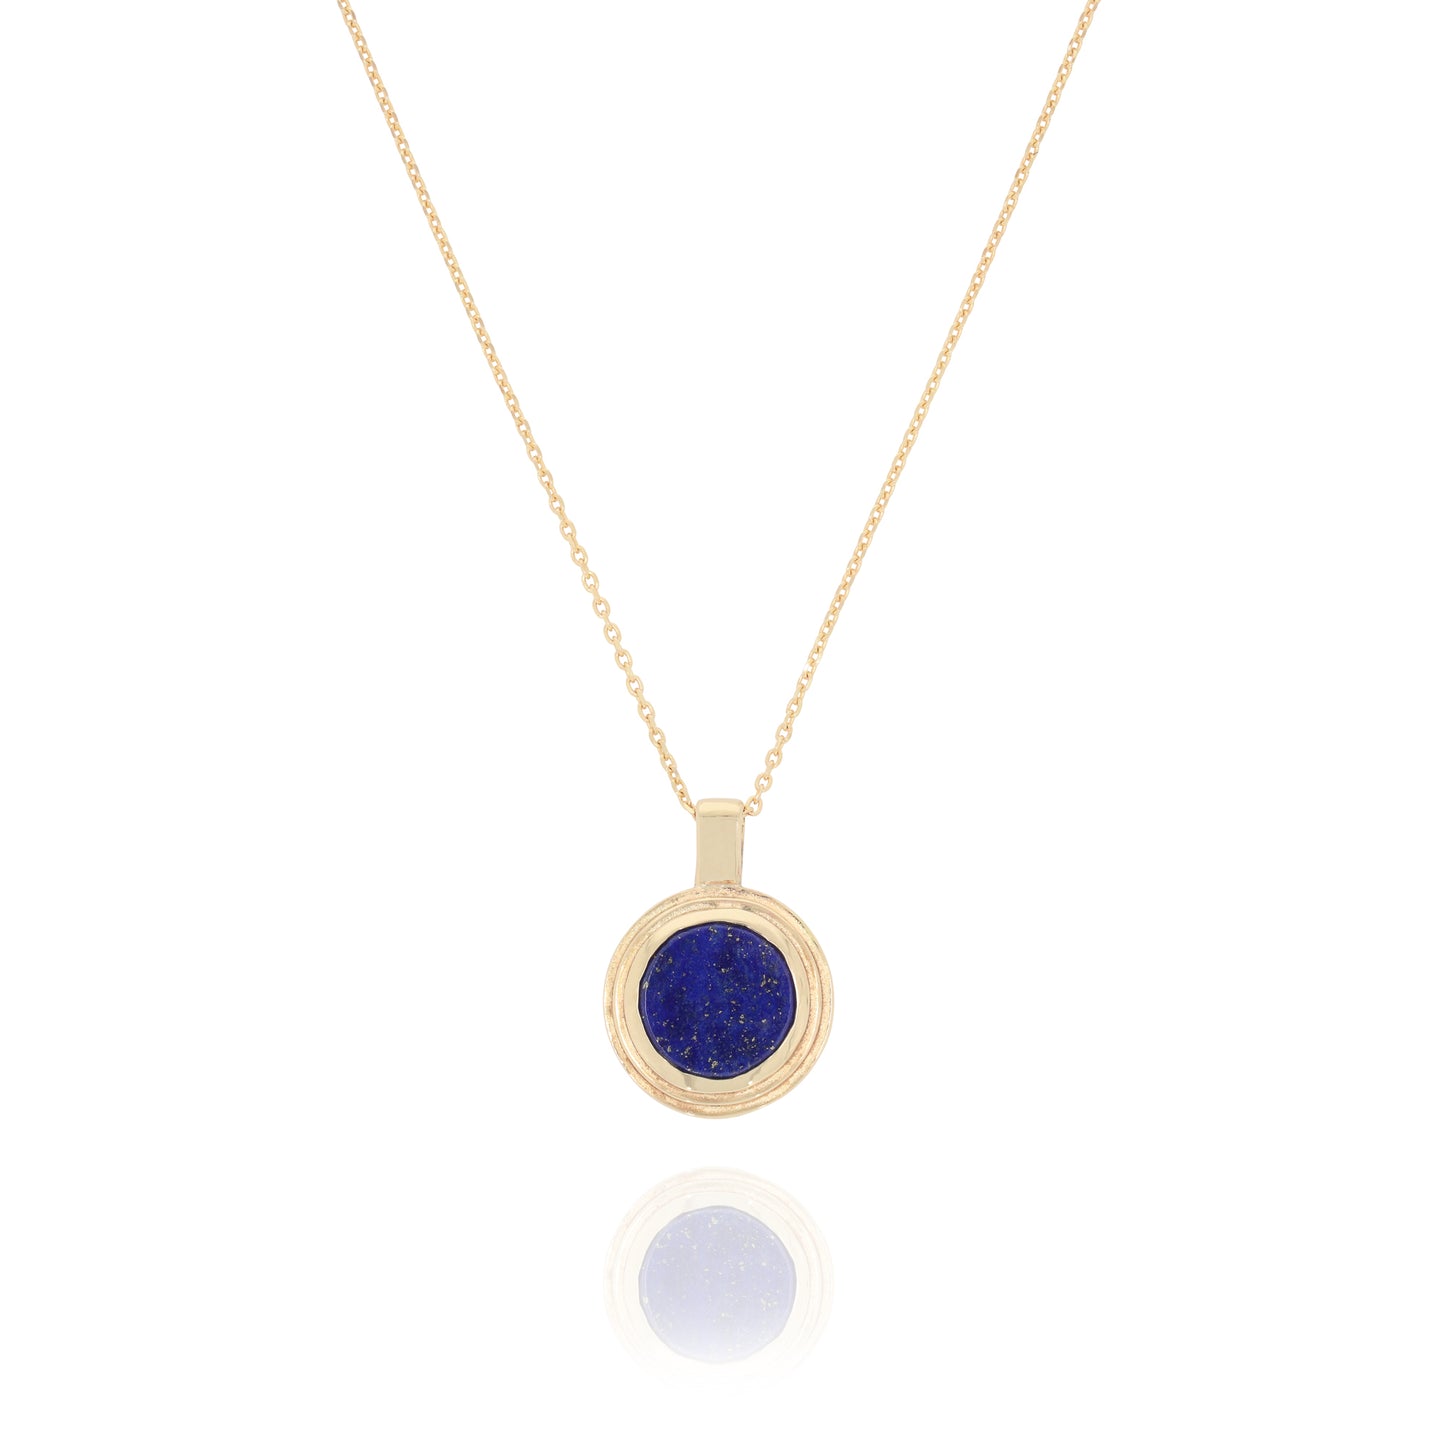 Ascent Necklace set with Lapis Lazuli